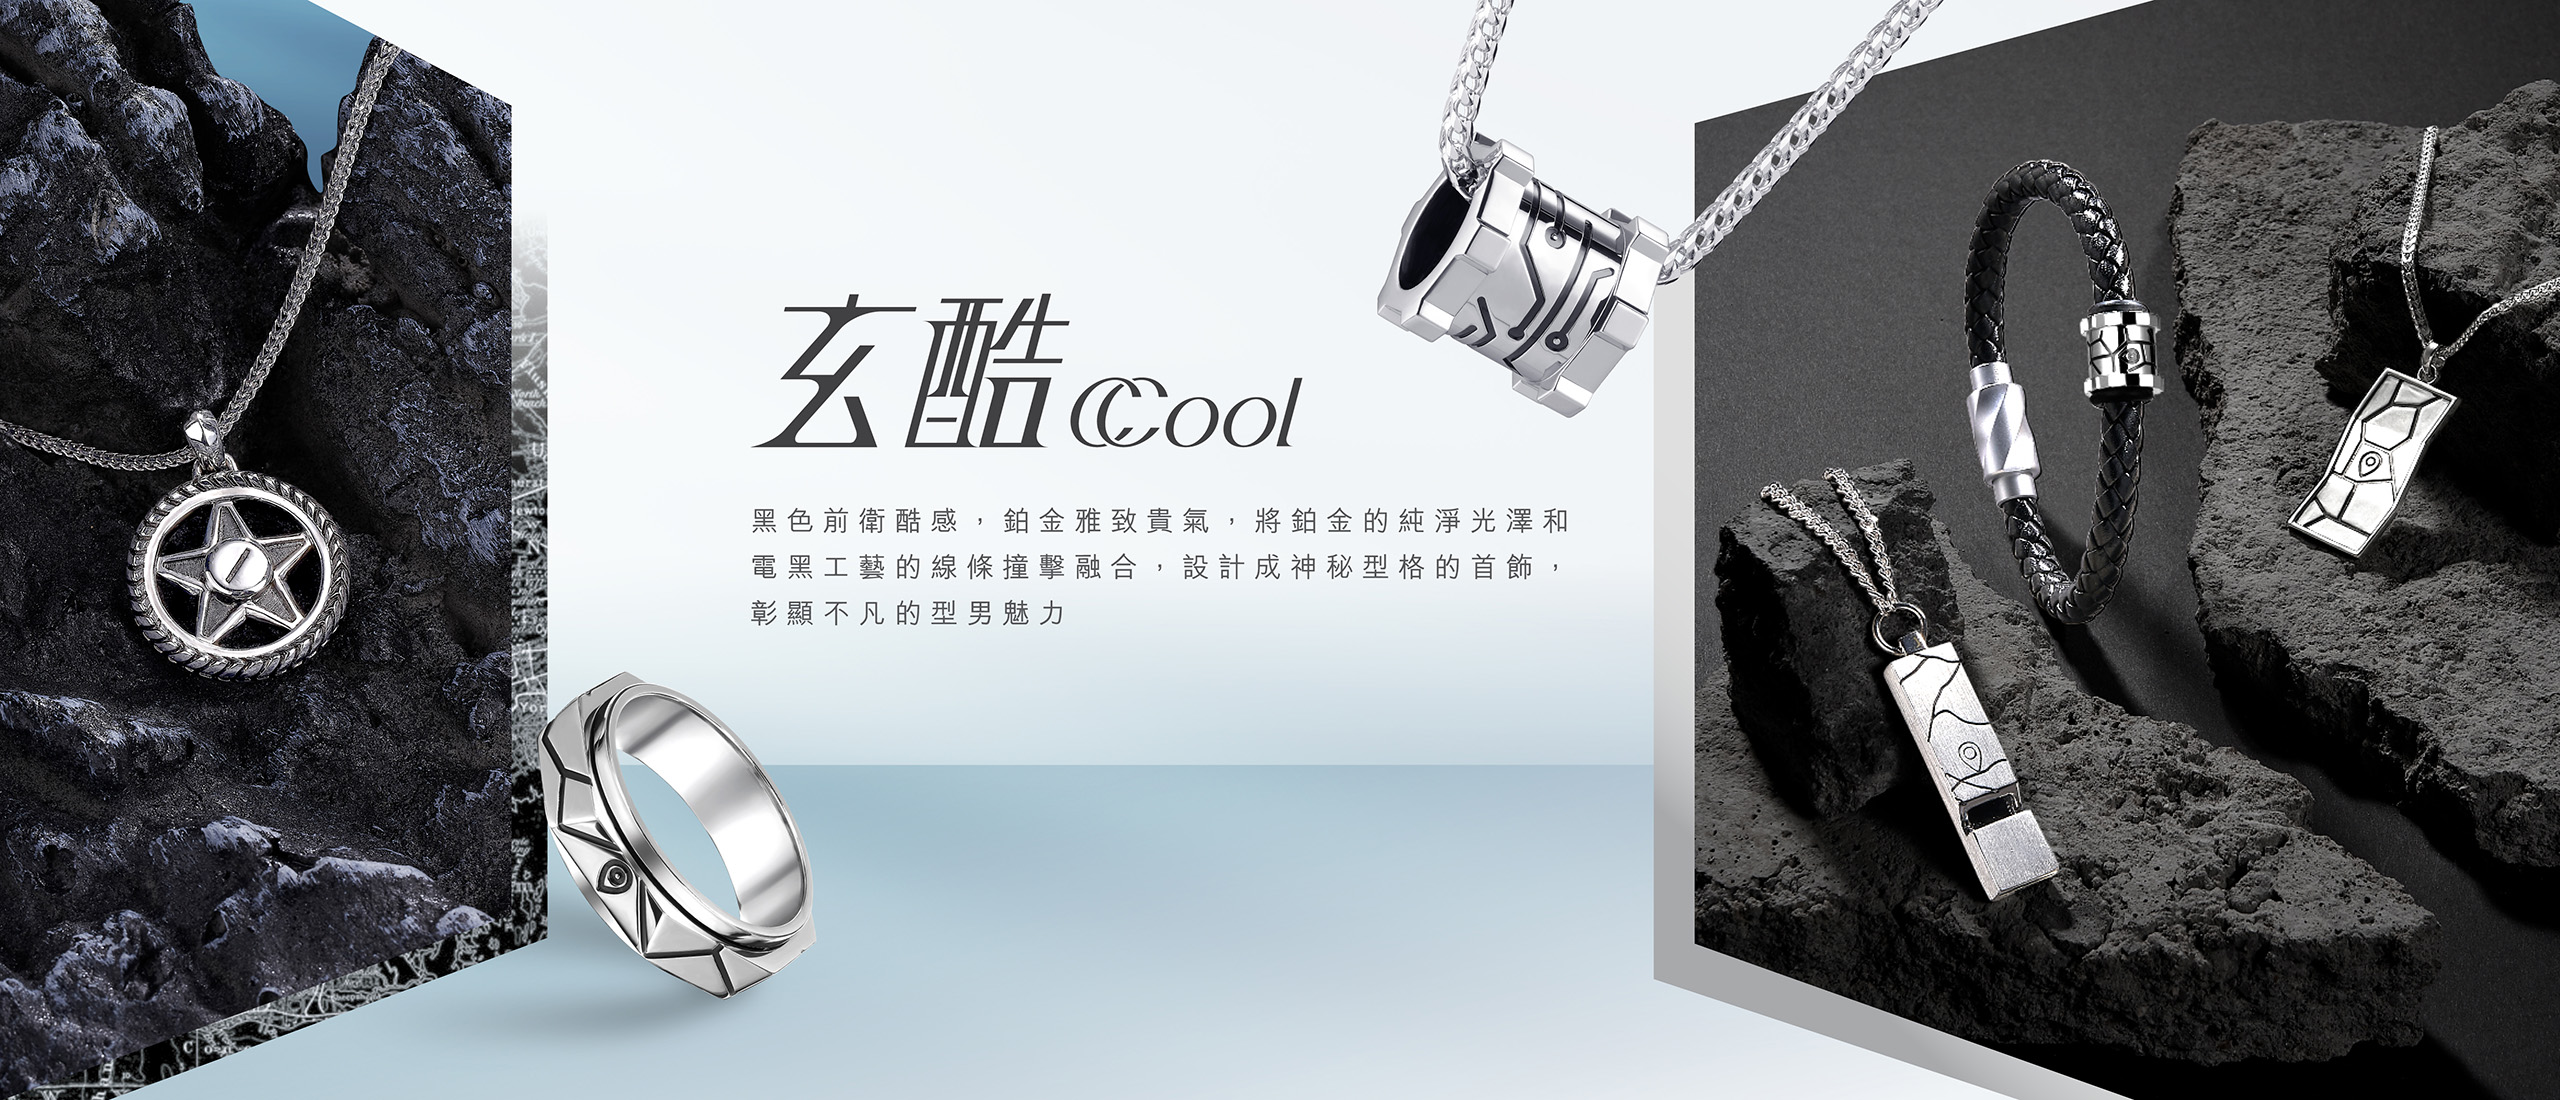 六福珠寶 - CCool Collection | 玄酷系列  Banner